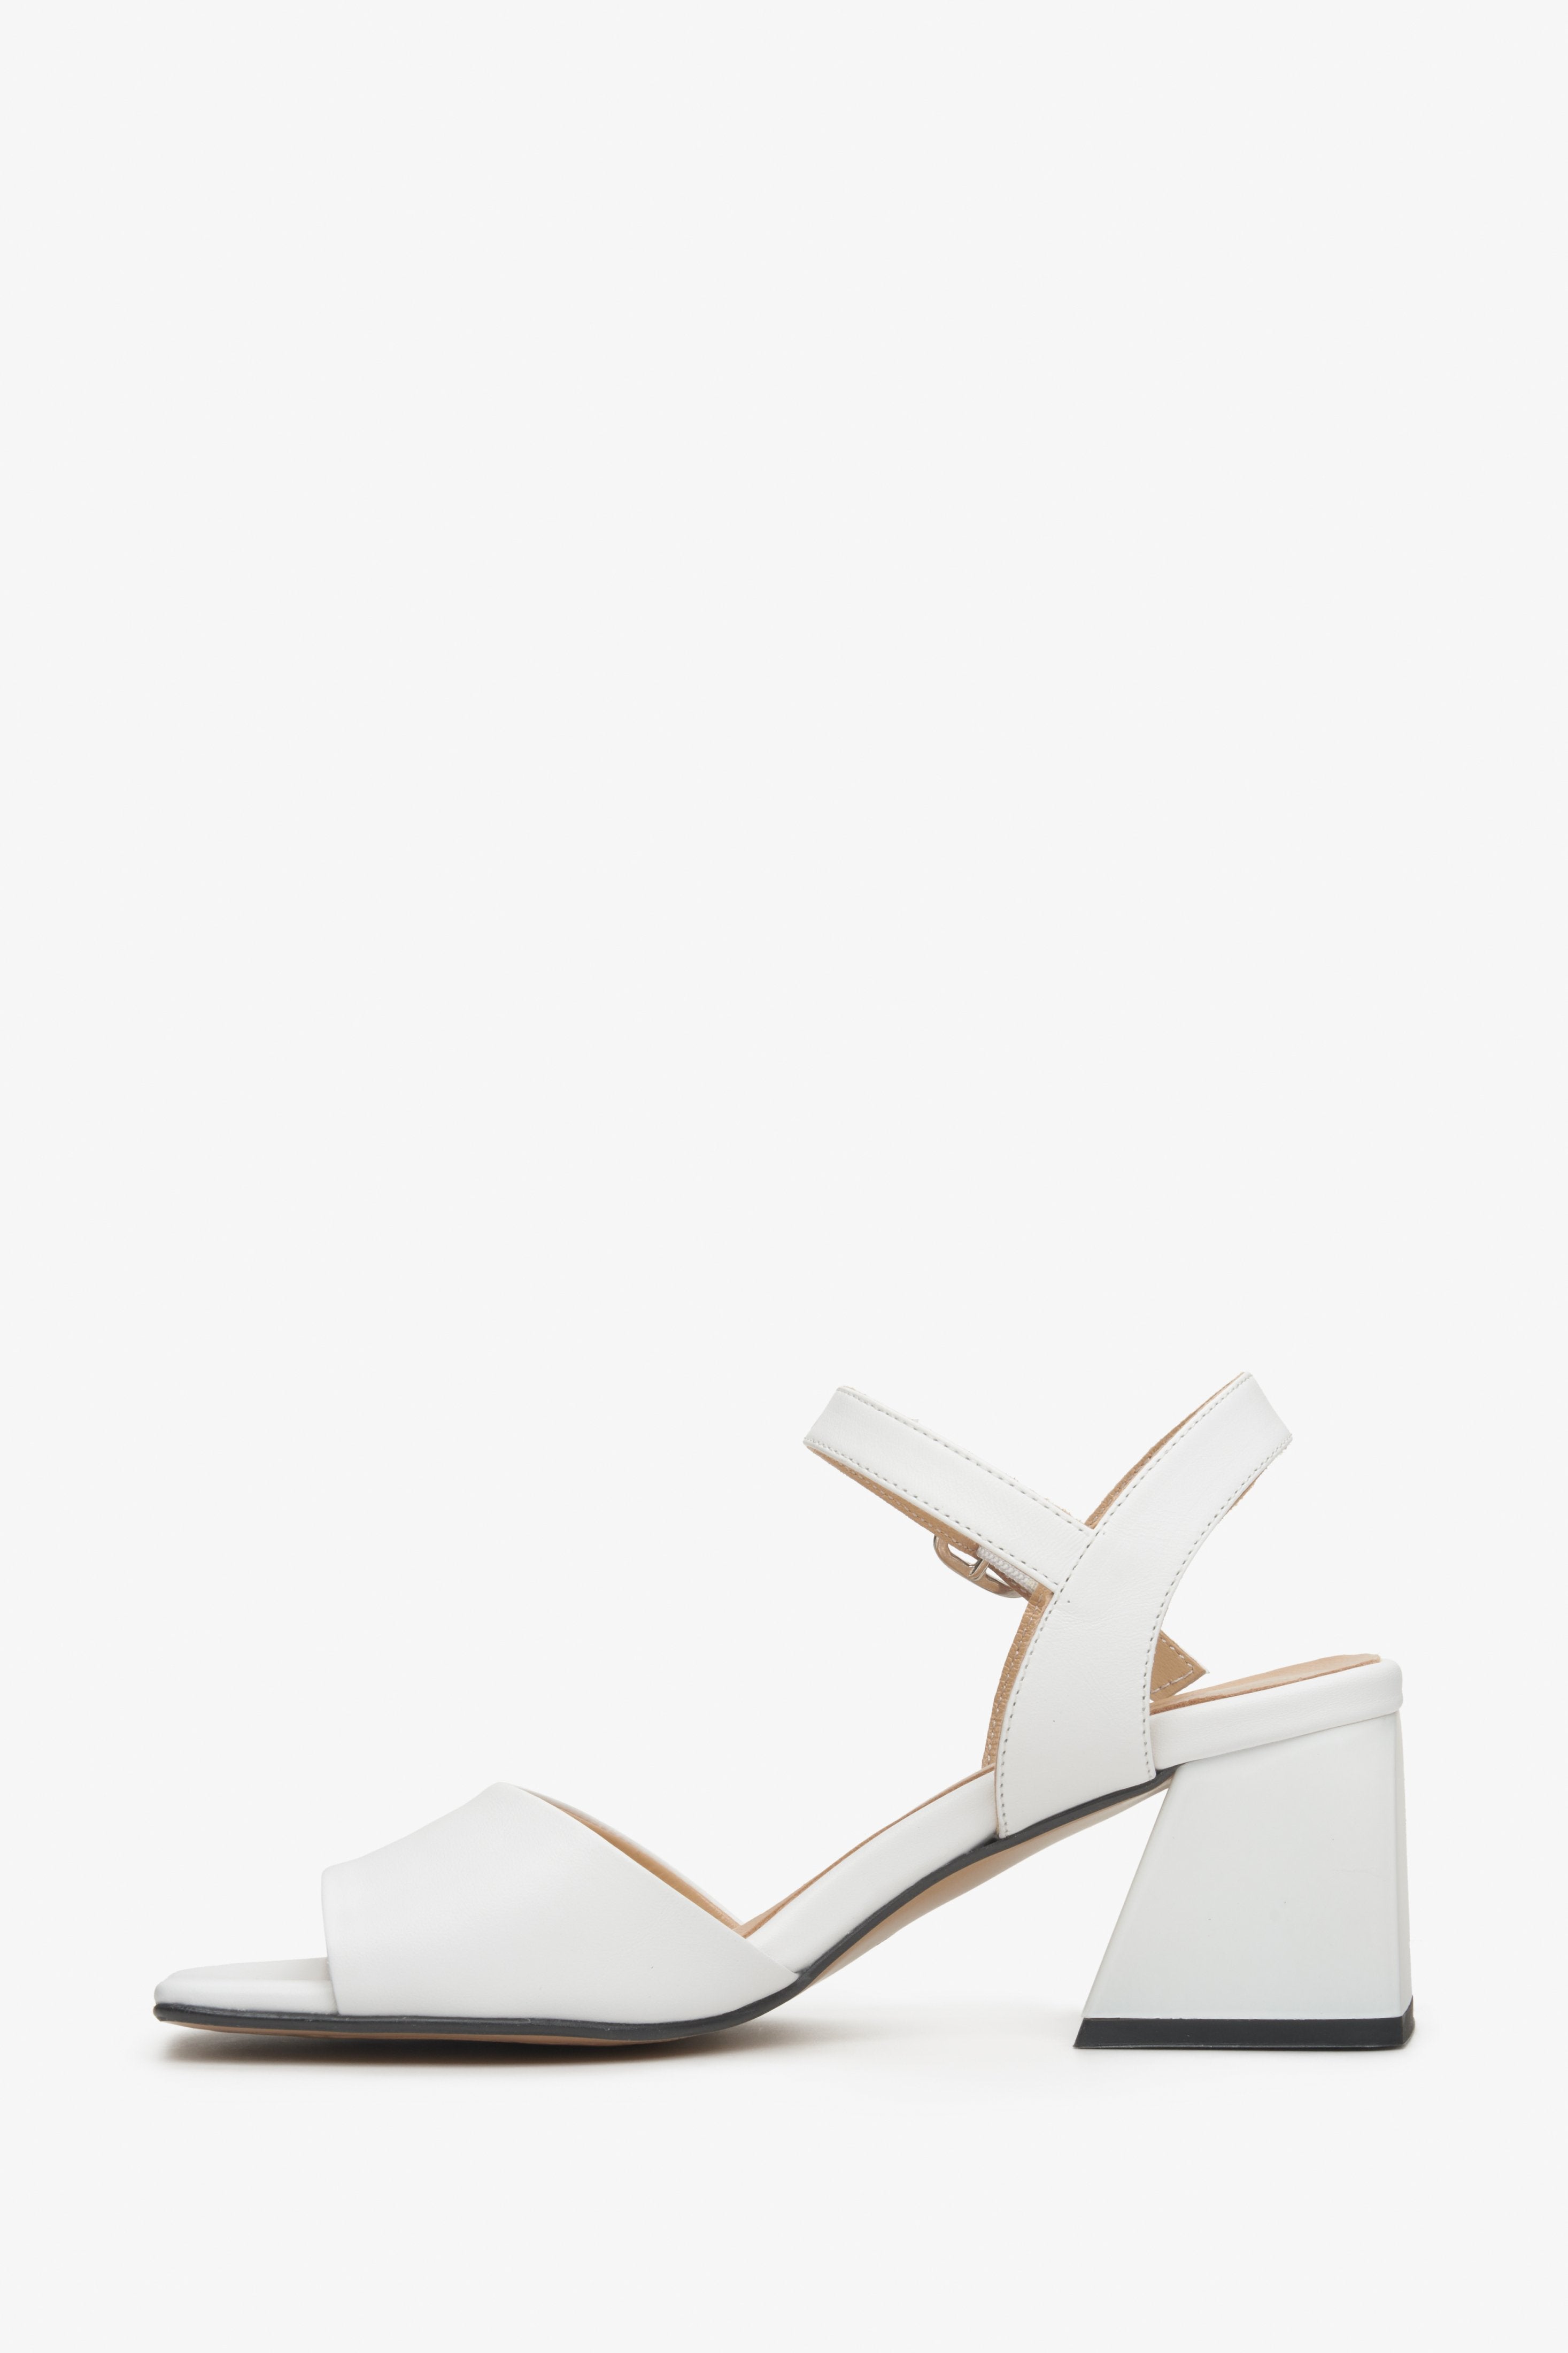 Białe, skórzane sandały damskie na lato na słupku Estro - prezentacja profilu butów.